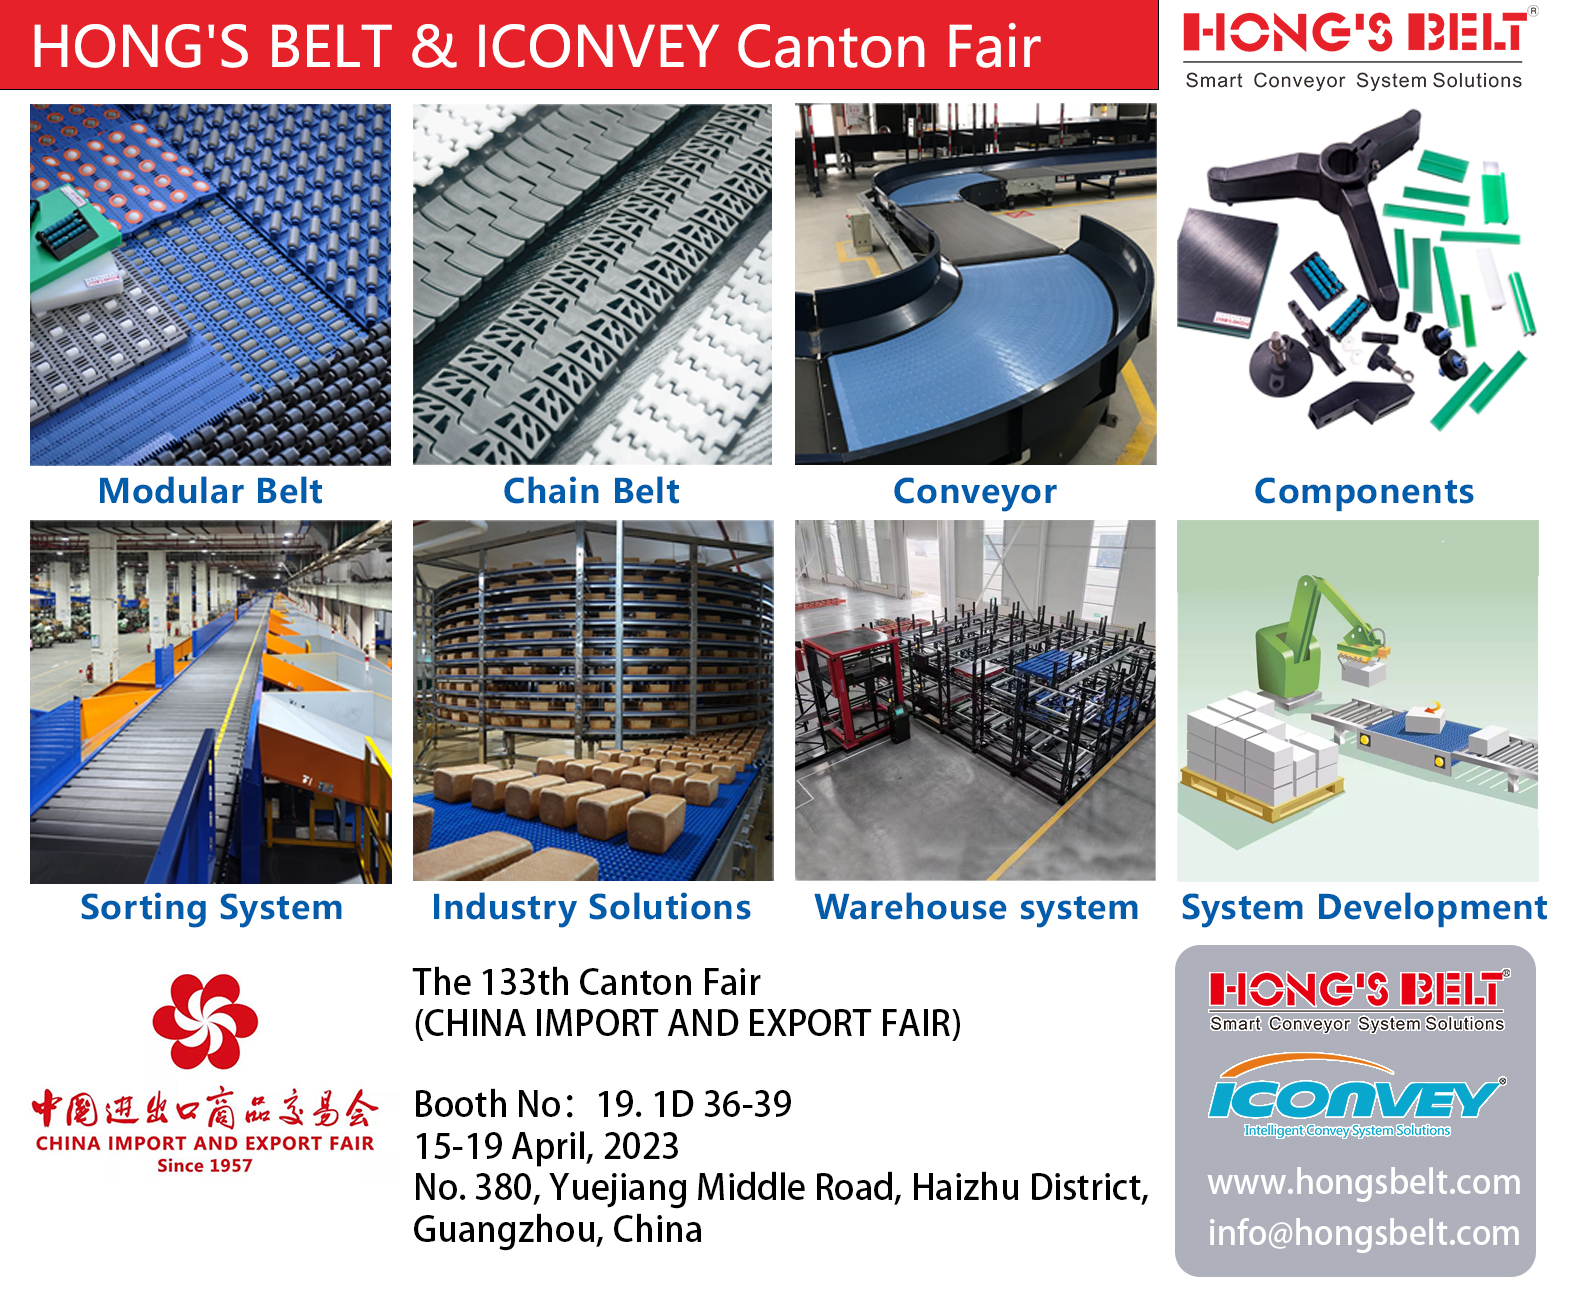 HONG'S BELT Canton Fair 2023